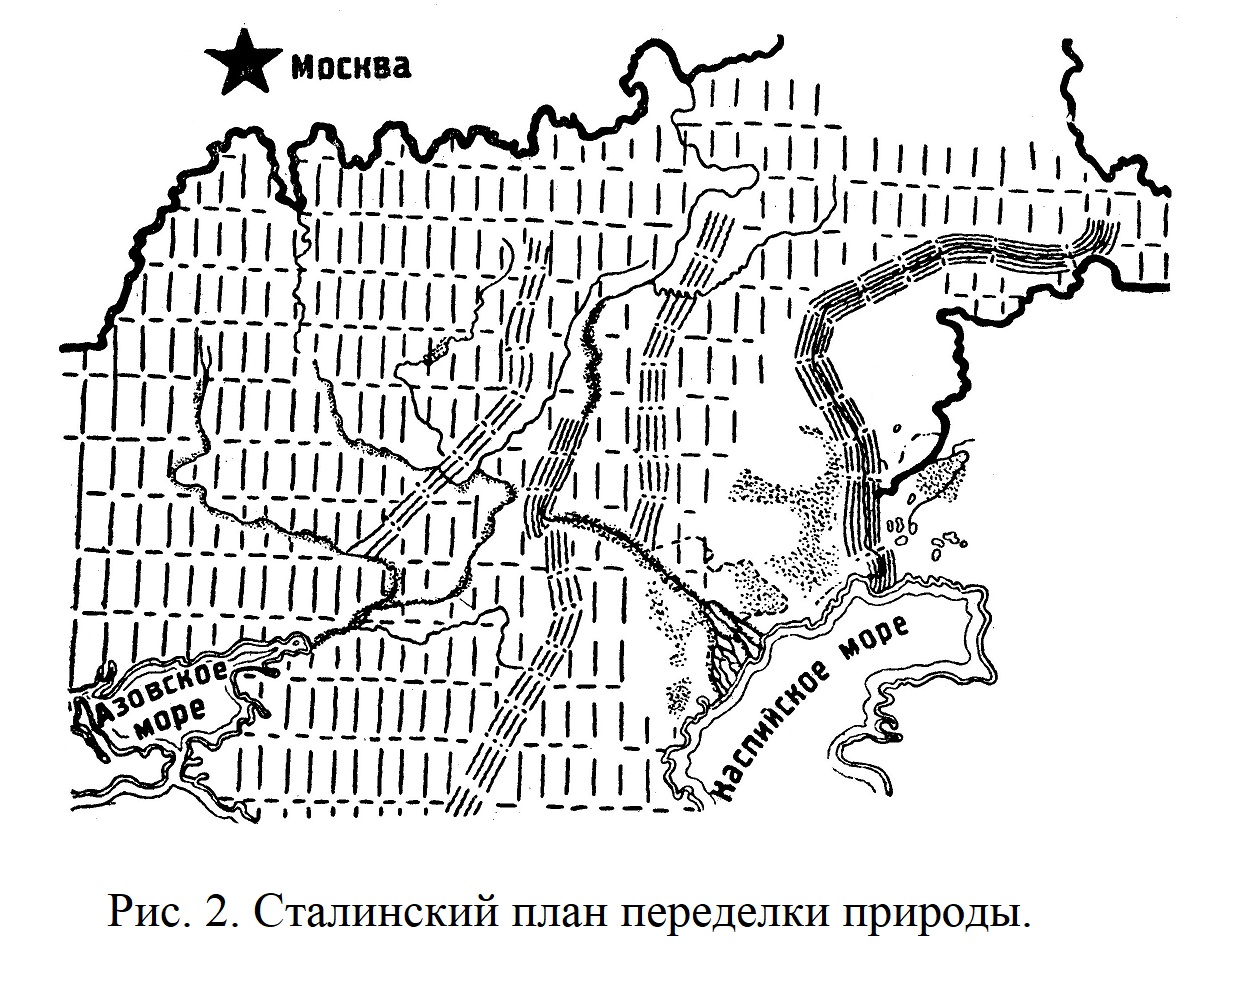 Сталинский план переделки природы